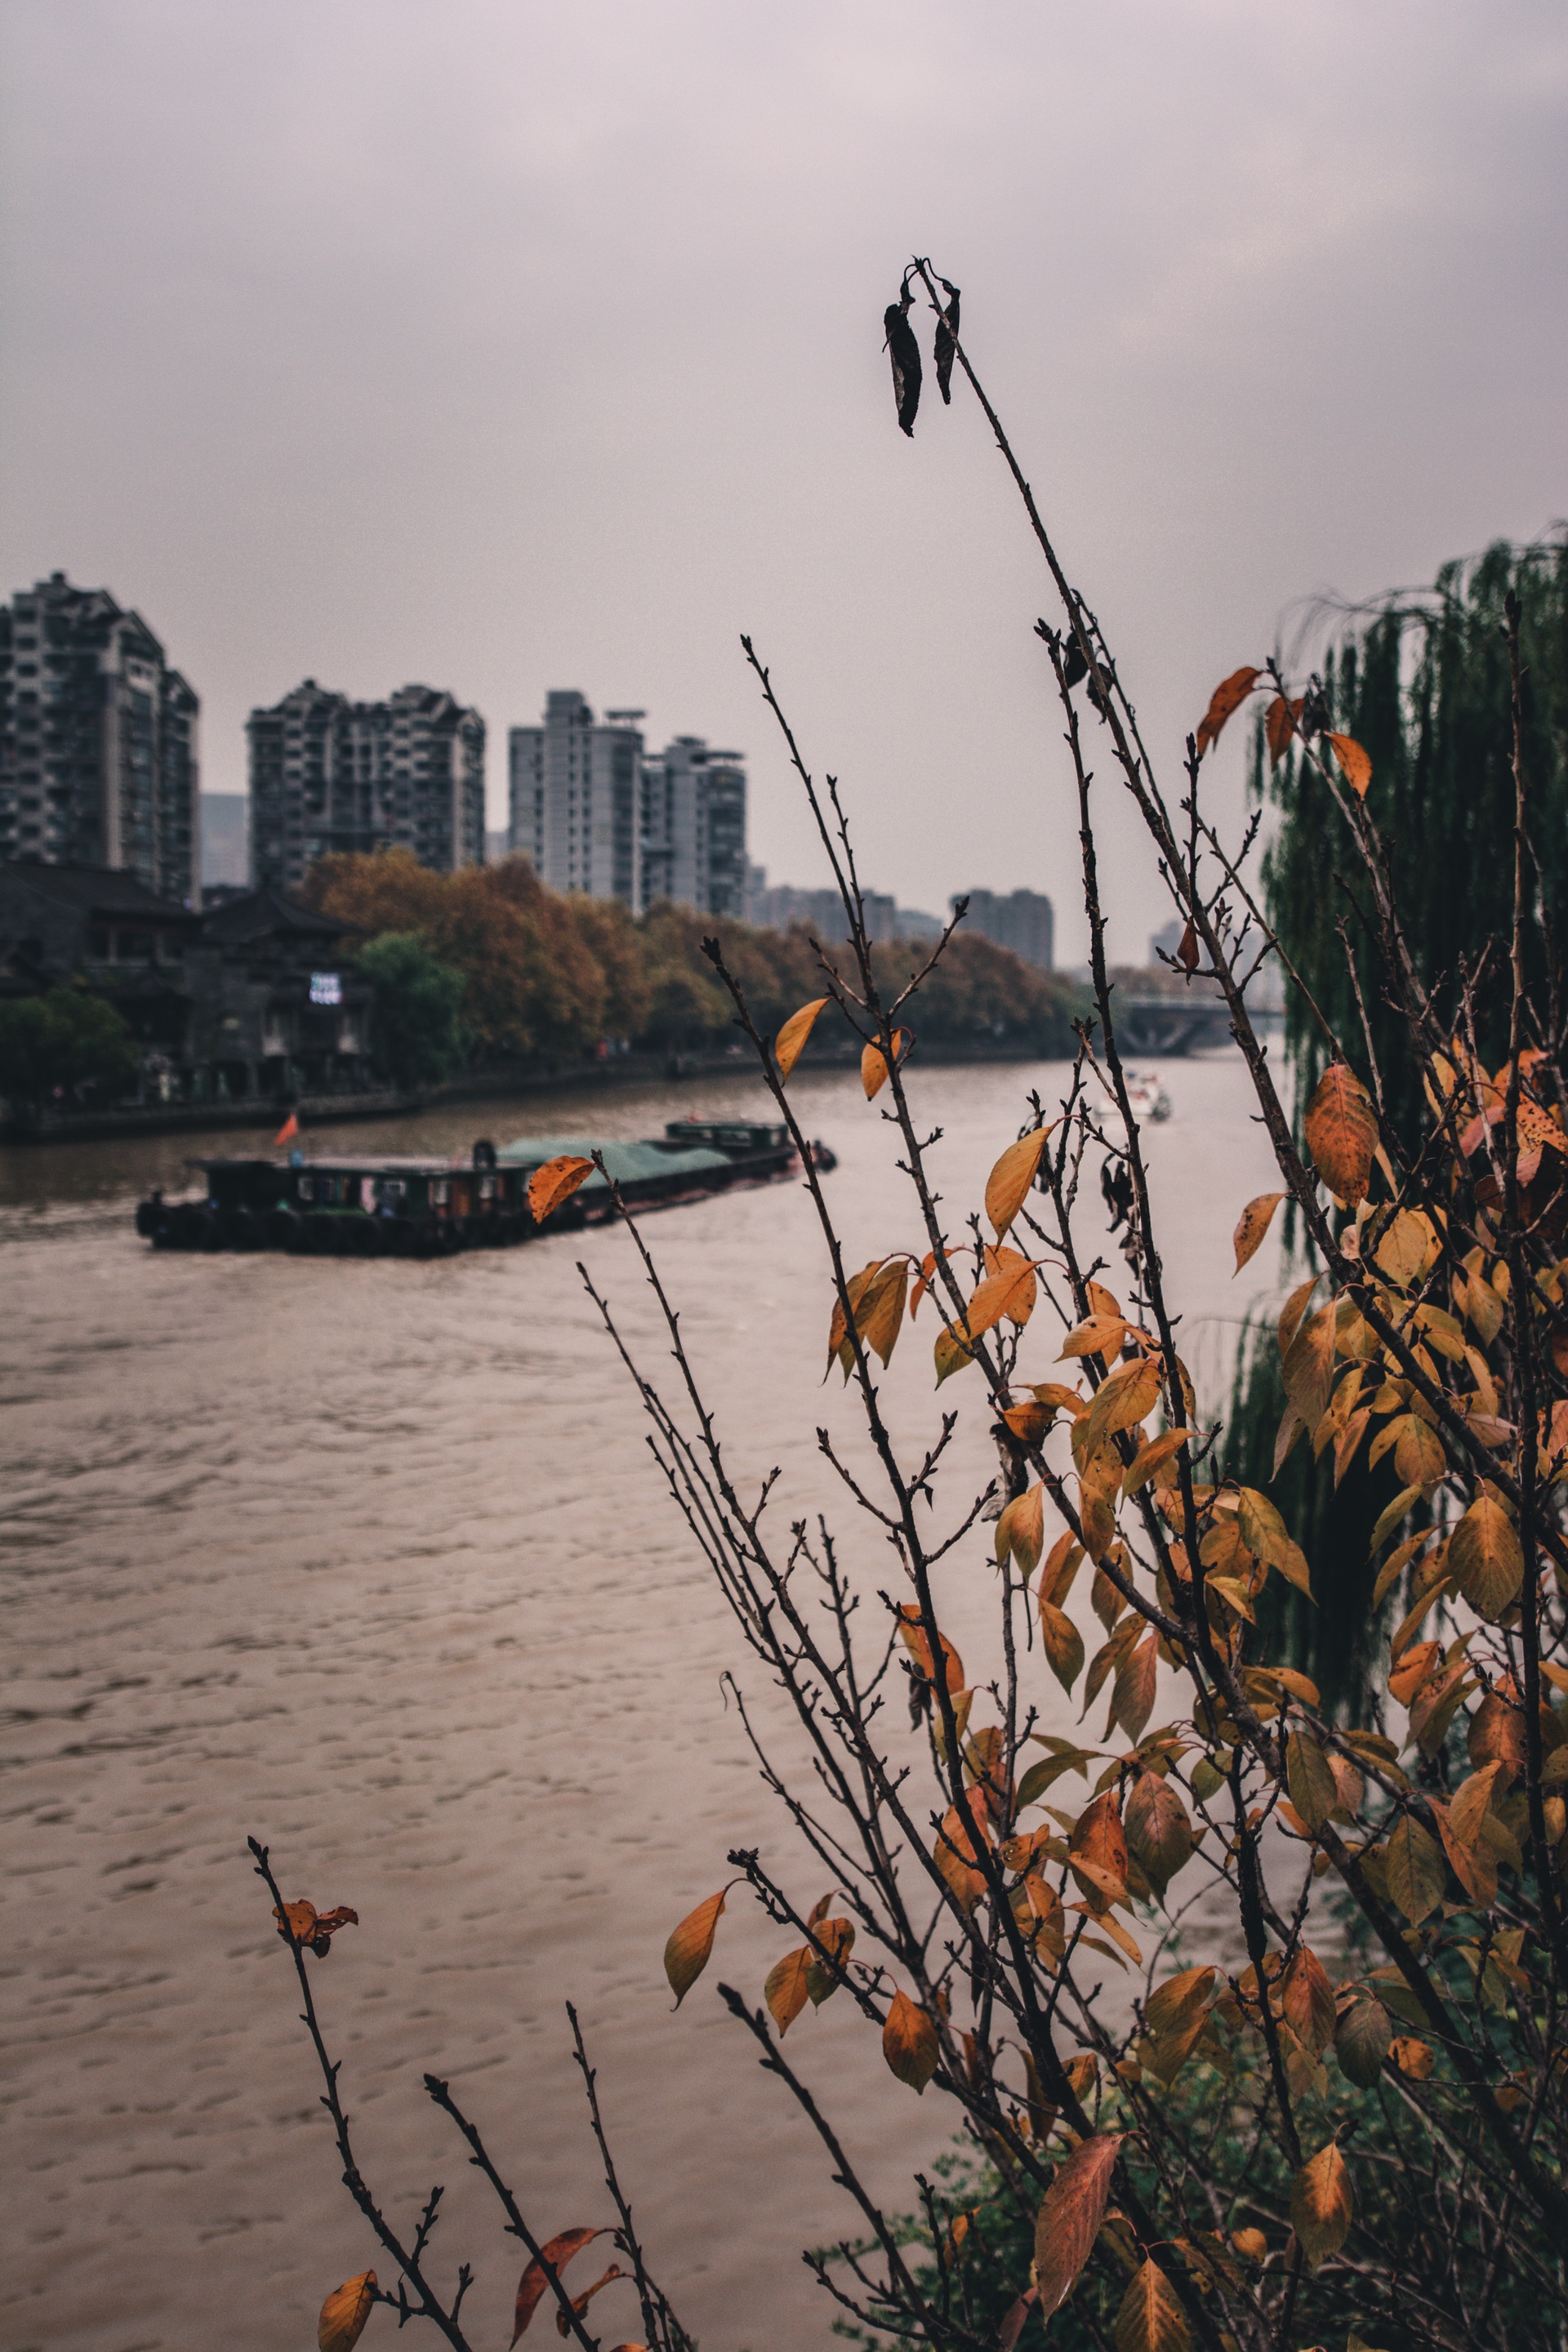 京杭运河....免费景点，时不时有船只通过，一面是小亭楼阁